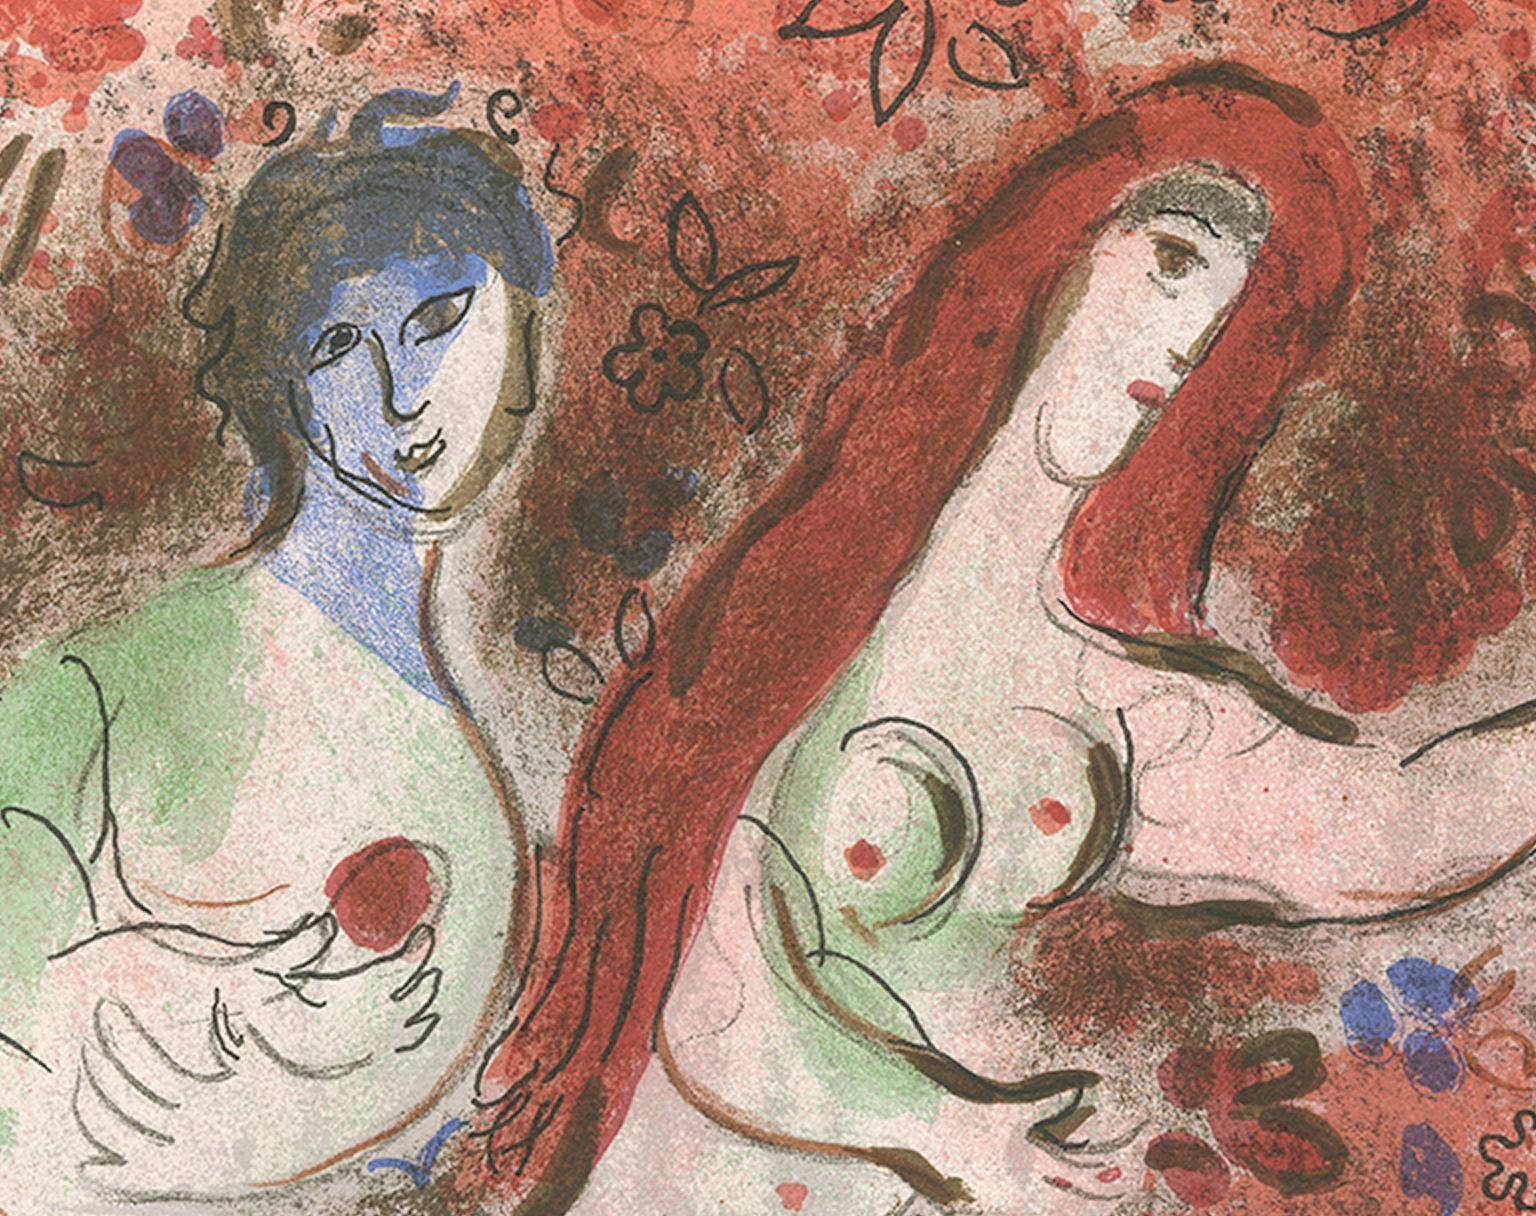 Lithographie en couleurs du 20e siècle représentant des personnages nus - Print de Marc Chagall